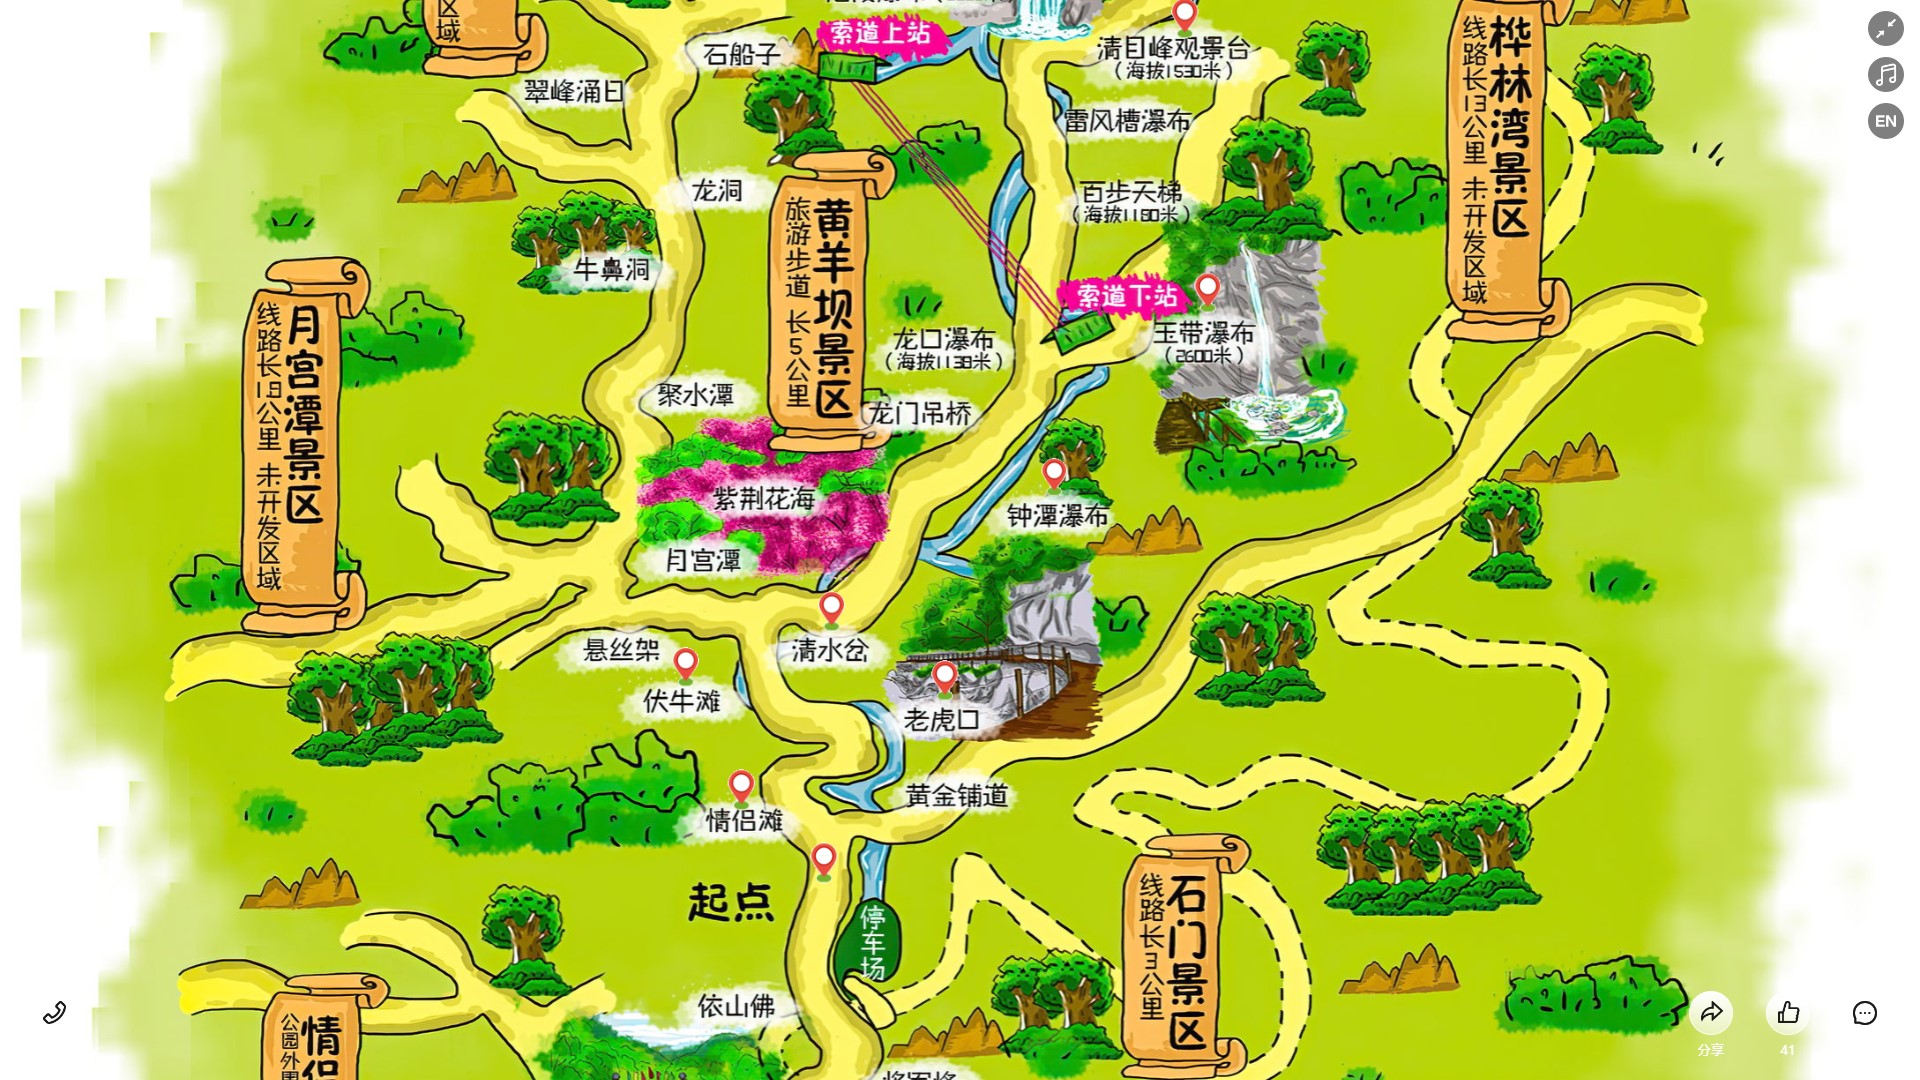 松江景区导览系统